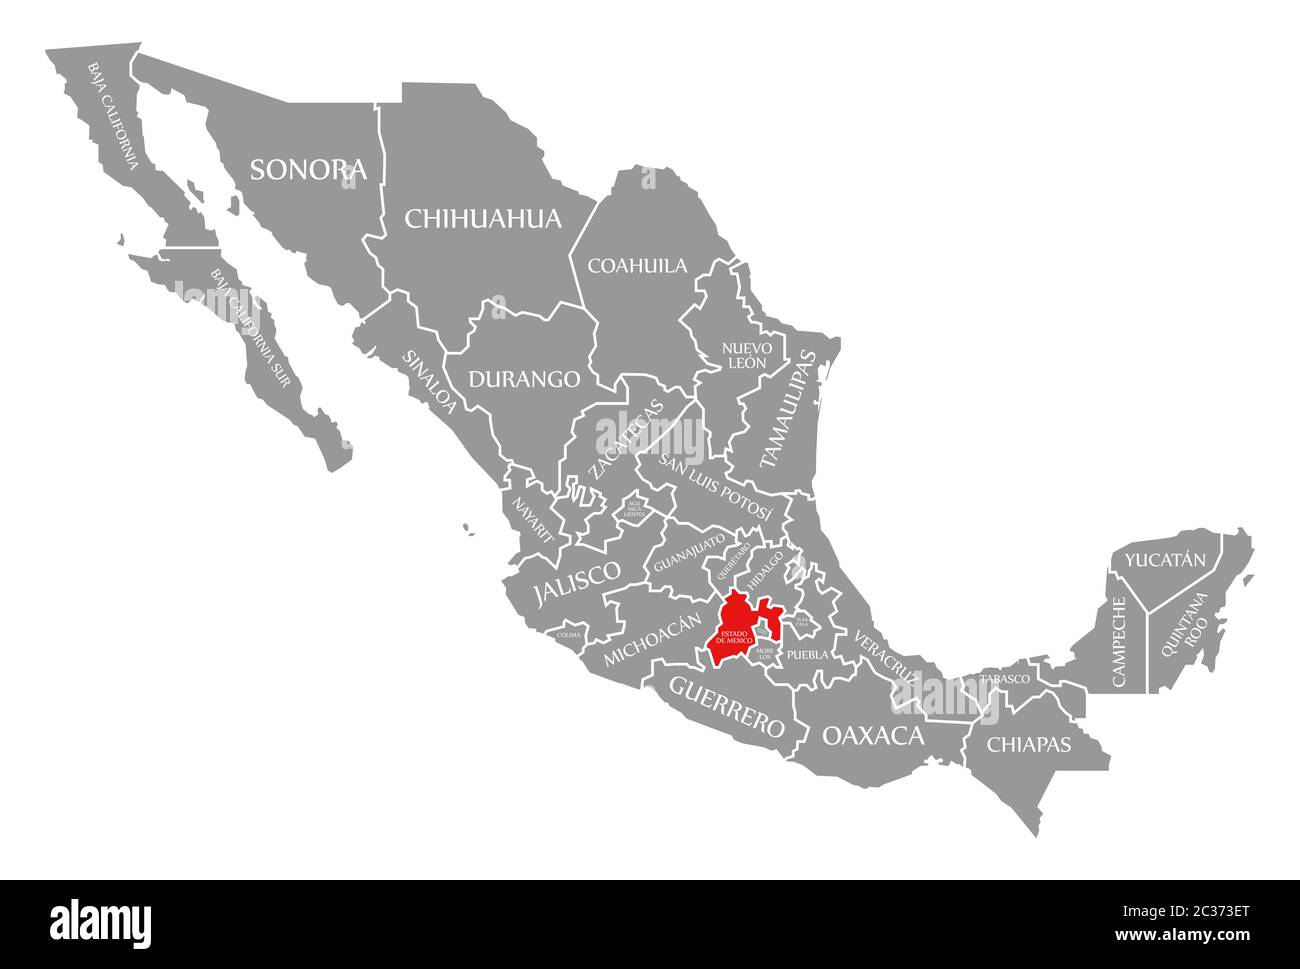 Estado de Mexico red highlighted in map of Mexico Stock Photo